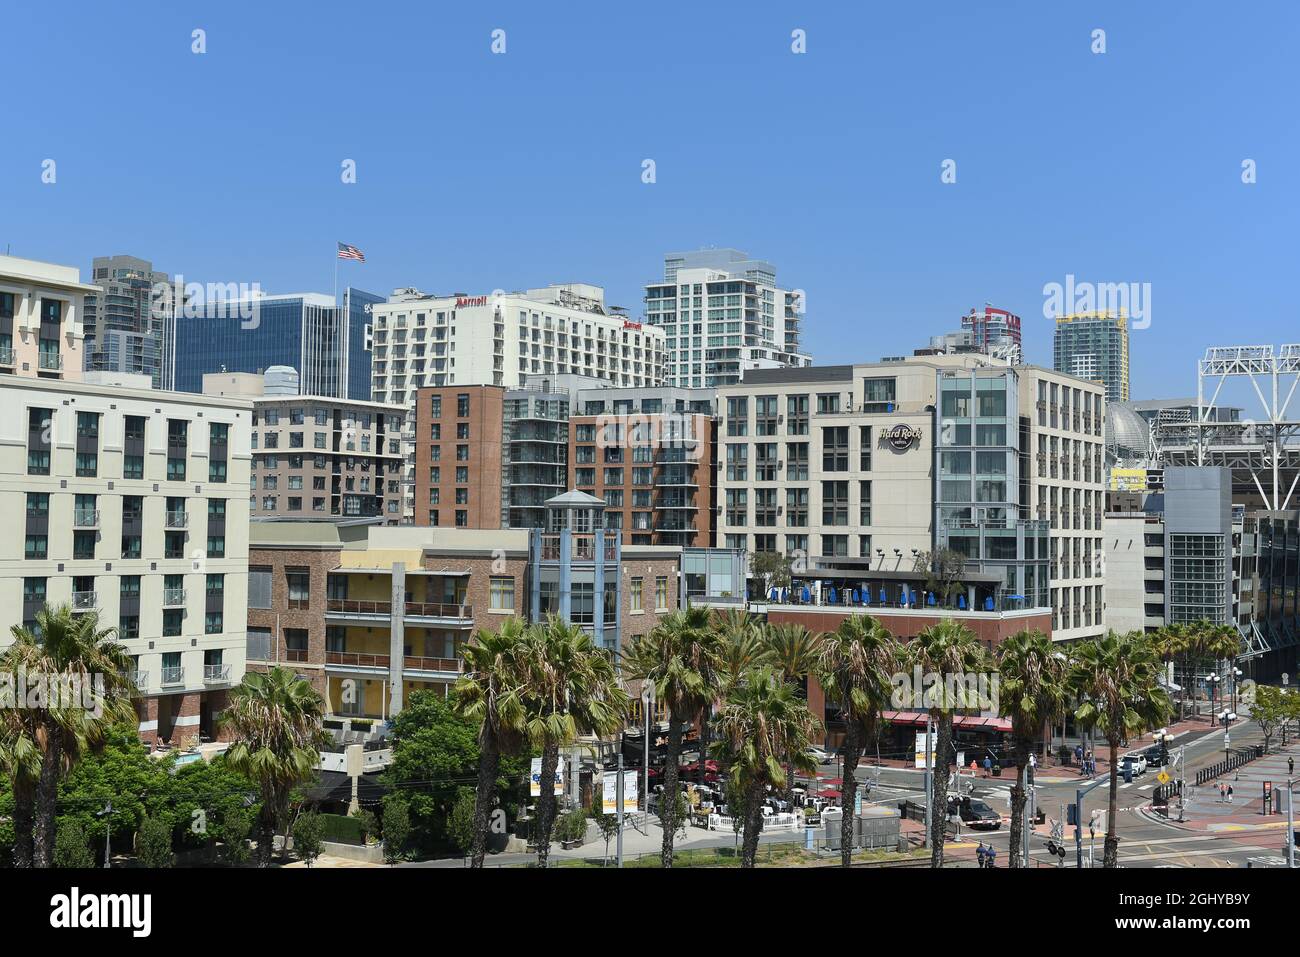 SAN DIEGO, CALIFORNIA - 25 AGO 2021: Hard Rock Hotel nel quartiere Gaslamp del centro di San Diego. Foto Stock